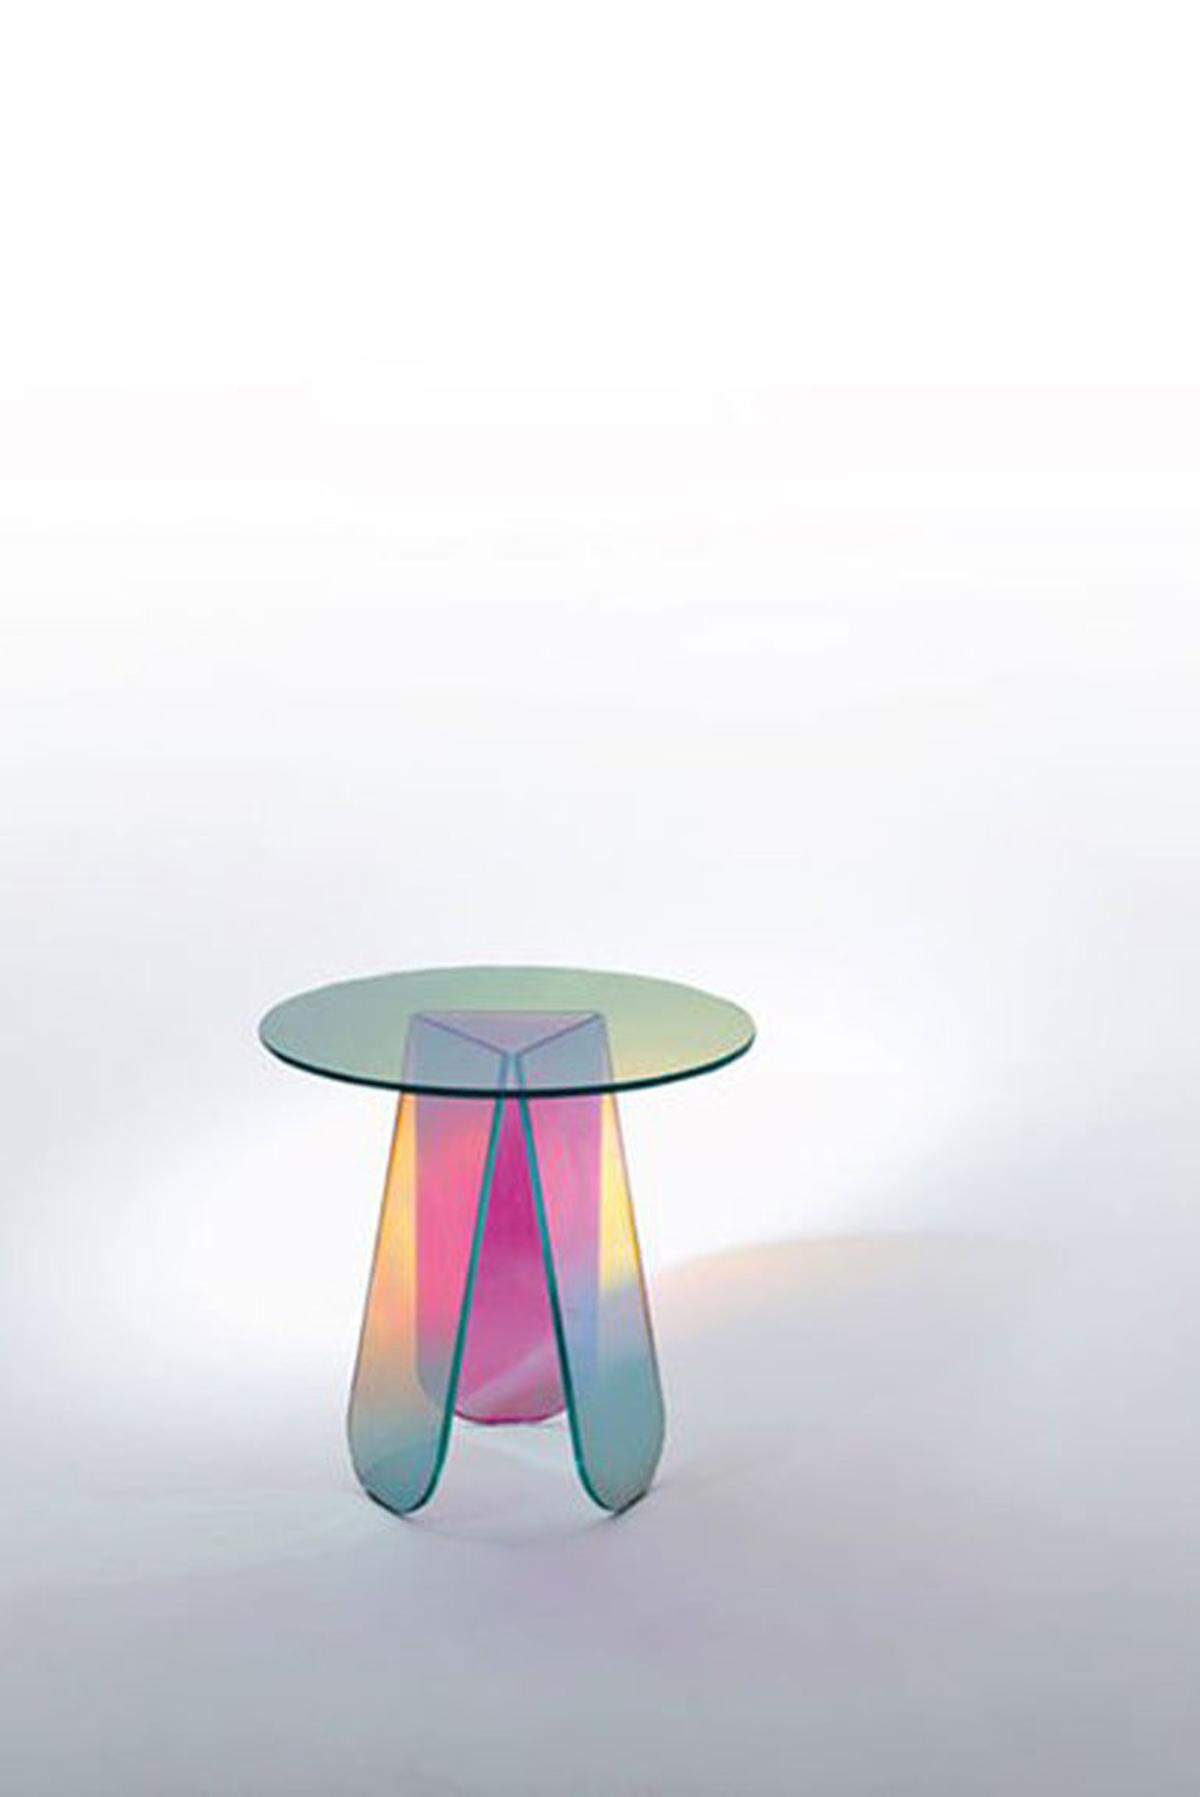 Patricia Urquiola hat für das italienische Schuhlabel Santoni mit Glas Italia den "Shimmer"-Hocker designt.